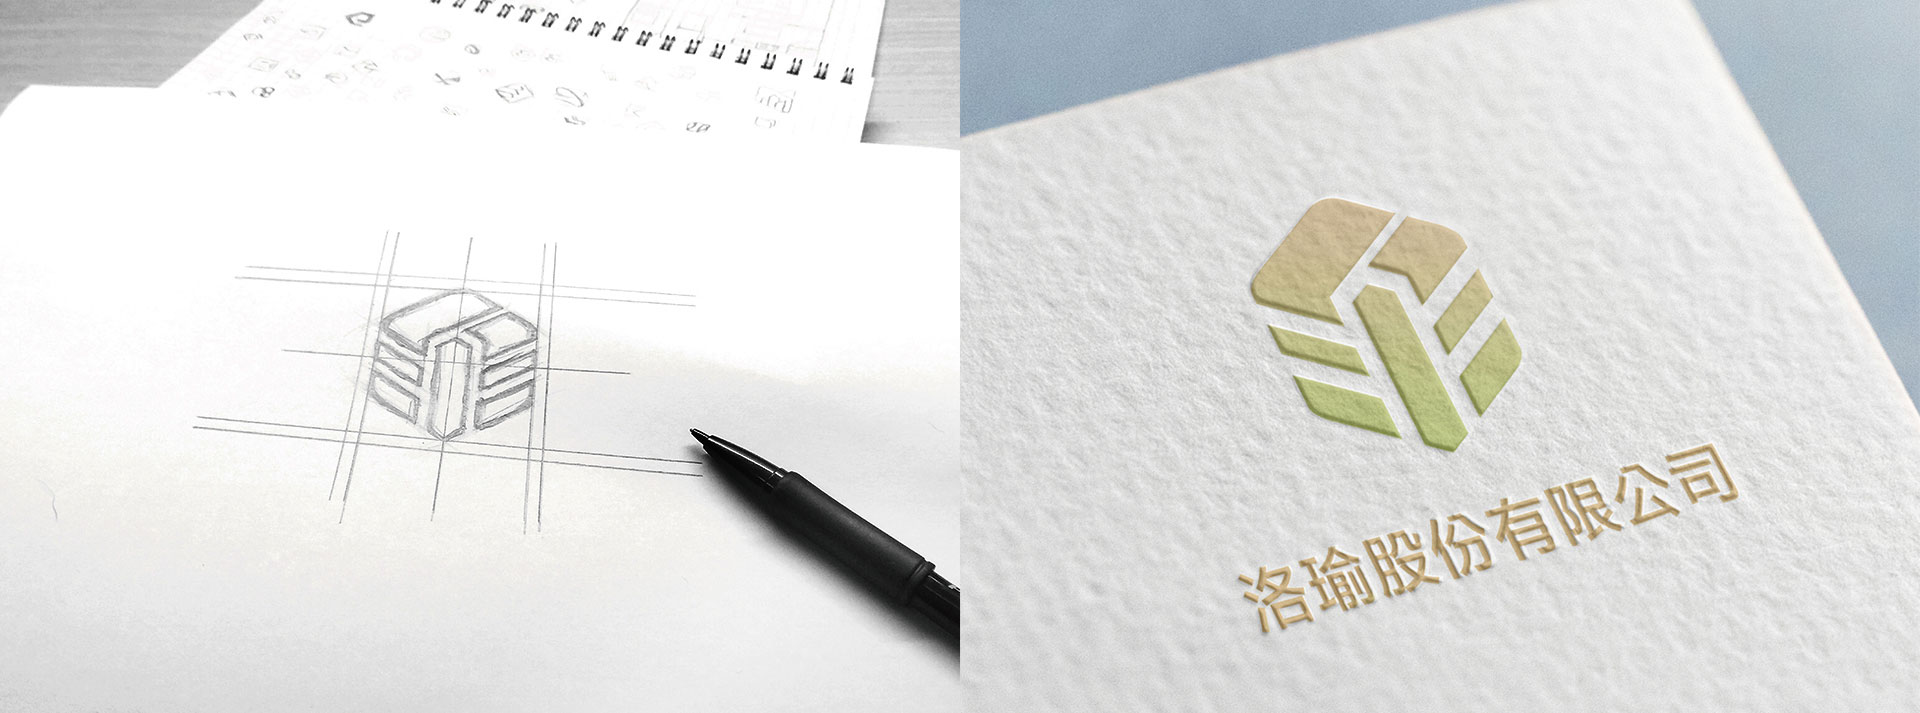 企業LOGO設計手繪稿及Logo於印刷時後加工打凸造型的設計效果